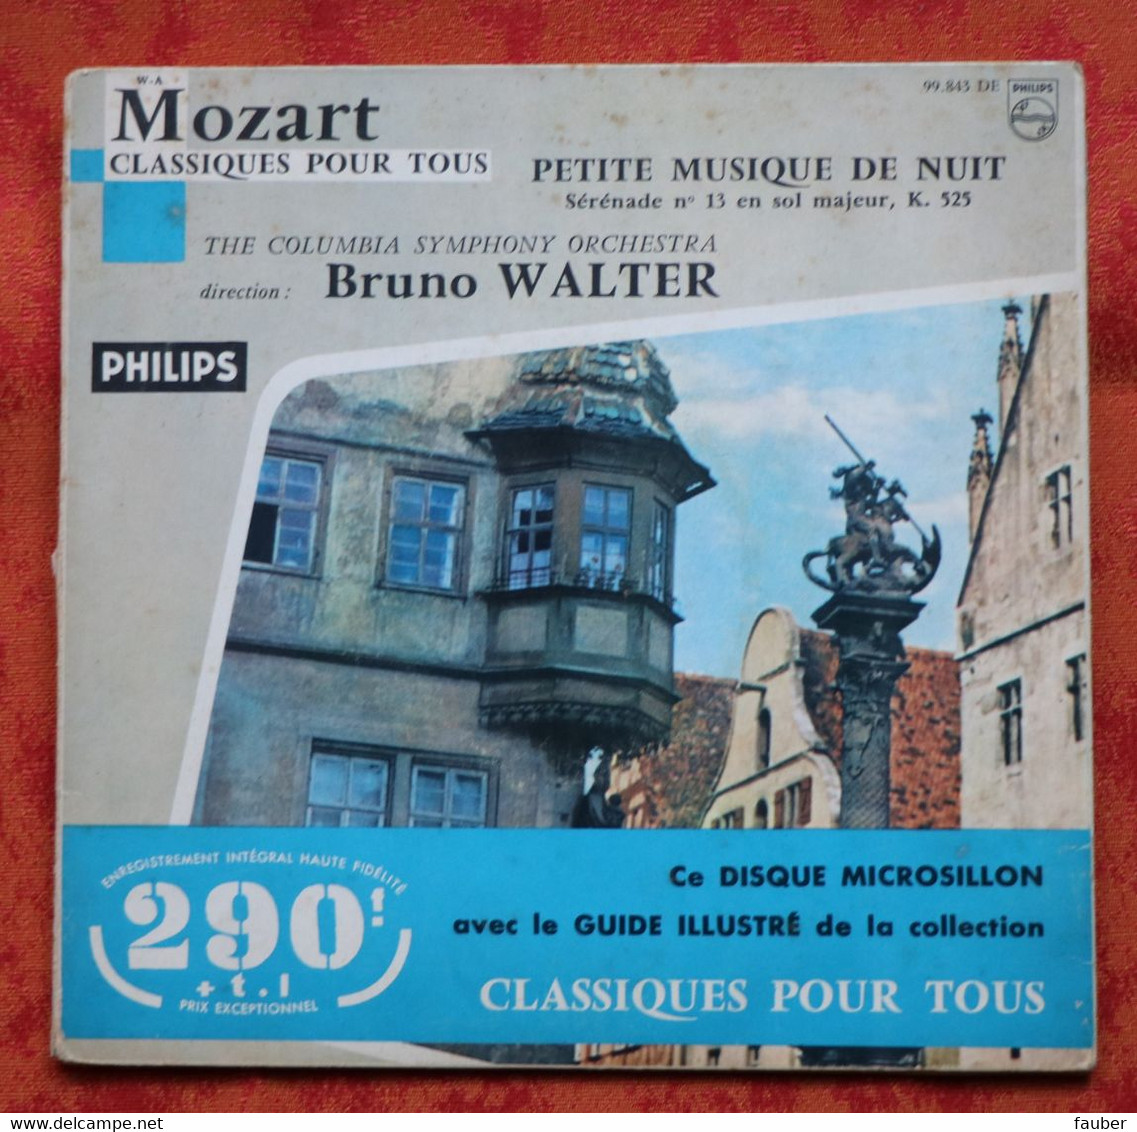 Mozart - Petite Musique De Nuit - Colombia Symphony Orchestra - Bruno Walter - Philips - Klassik